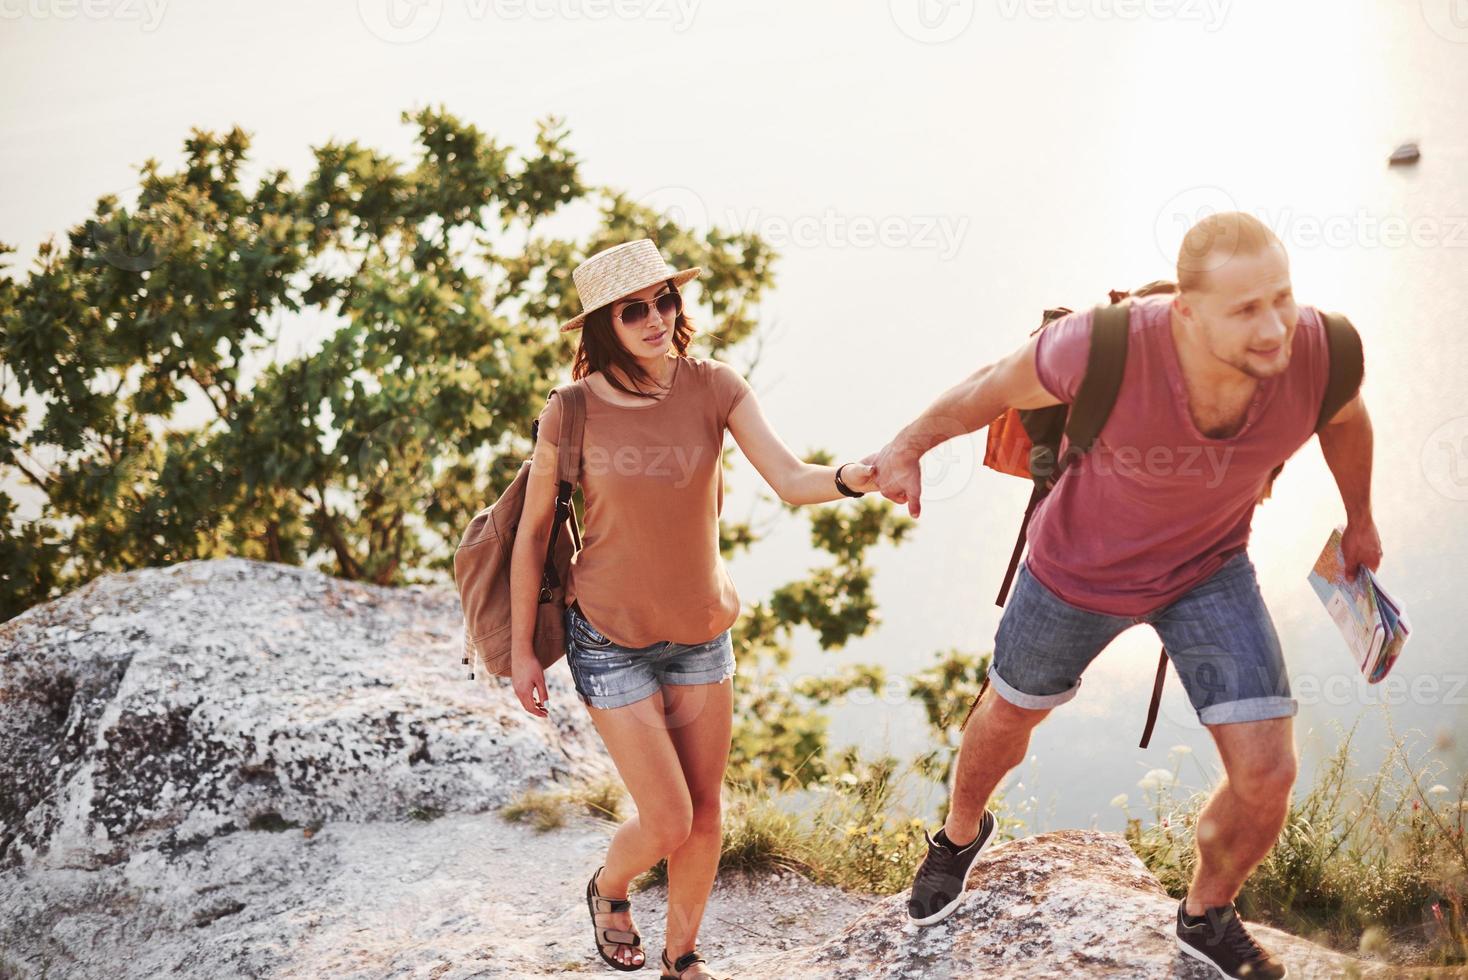 Parece que el hombre sabe a dónde ir. pareja joven ha decidido pasar sus vacaciones de forma activa en el borde de la hermosa roca con el lago al fondo foto